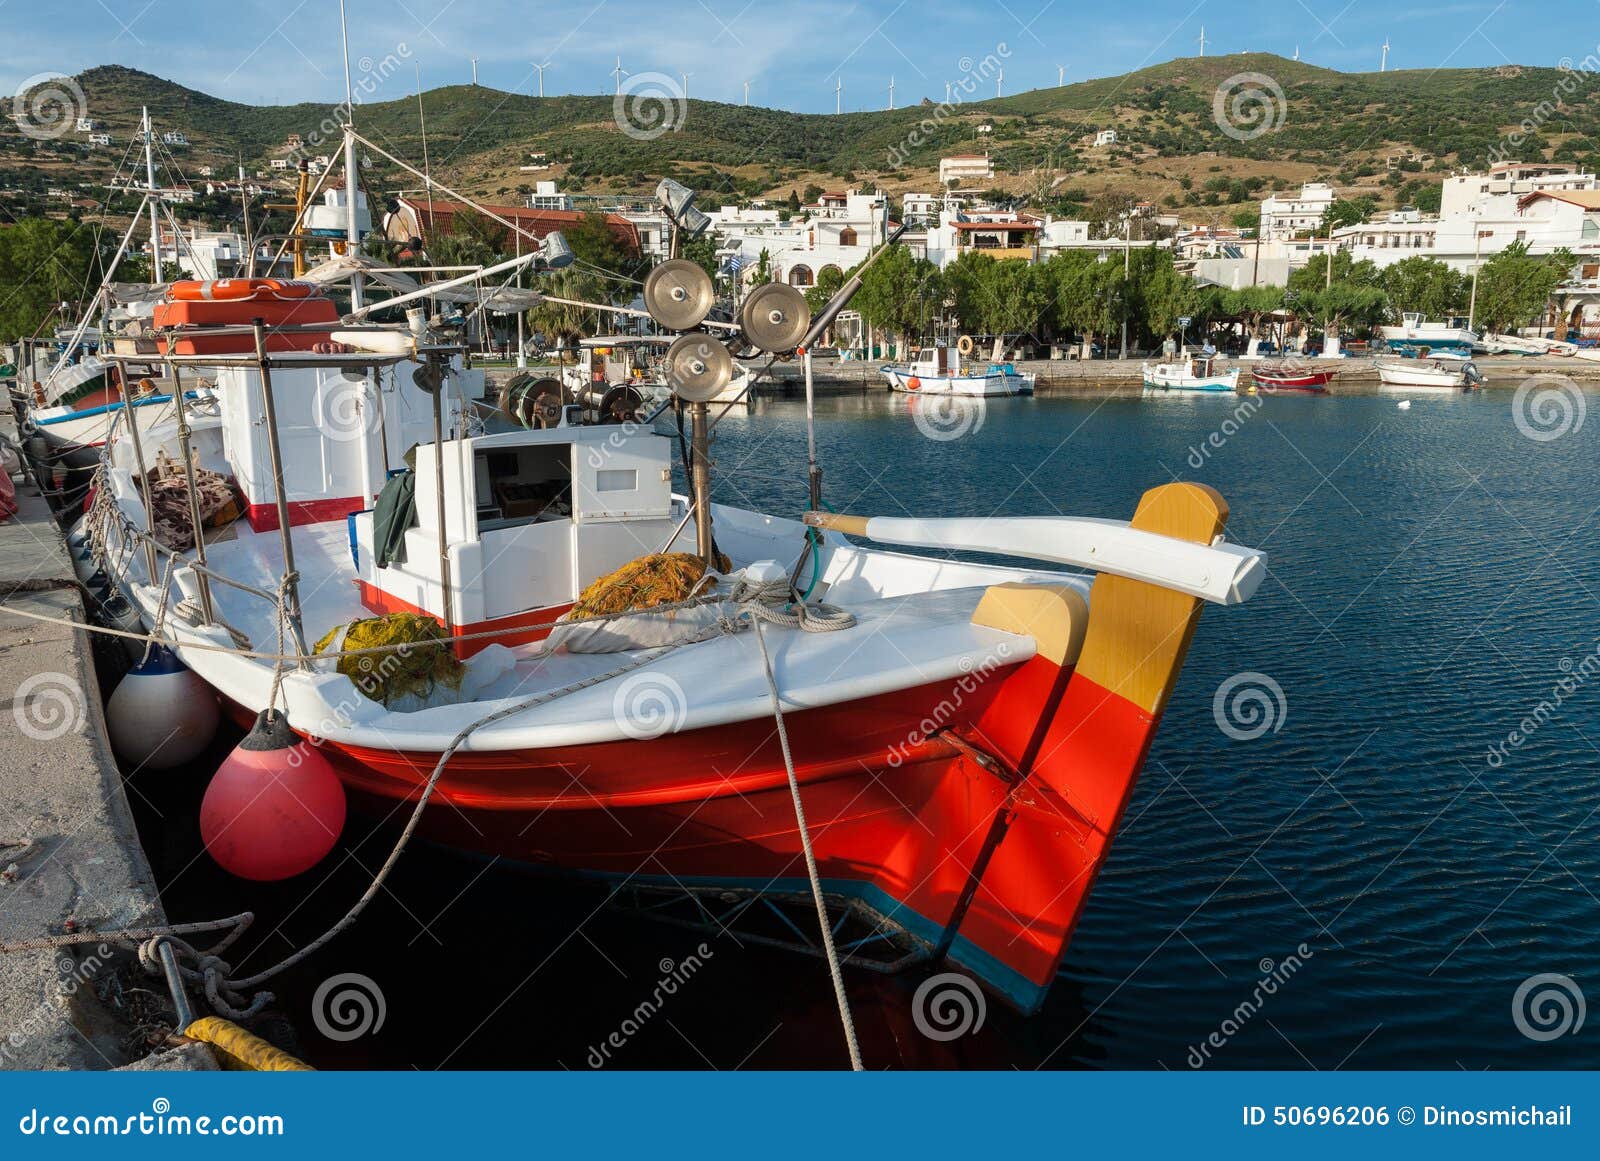 灯塔希腊地中海 库存图片. 图片 包括有 巡航, 模式, 灰色, 希腊, 船舶, 投反对票, 地中海, 小珠靠岸的 - 73565349